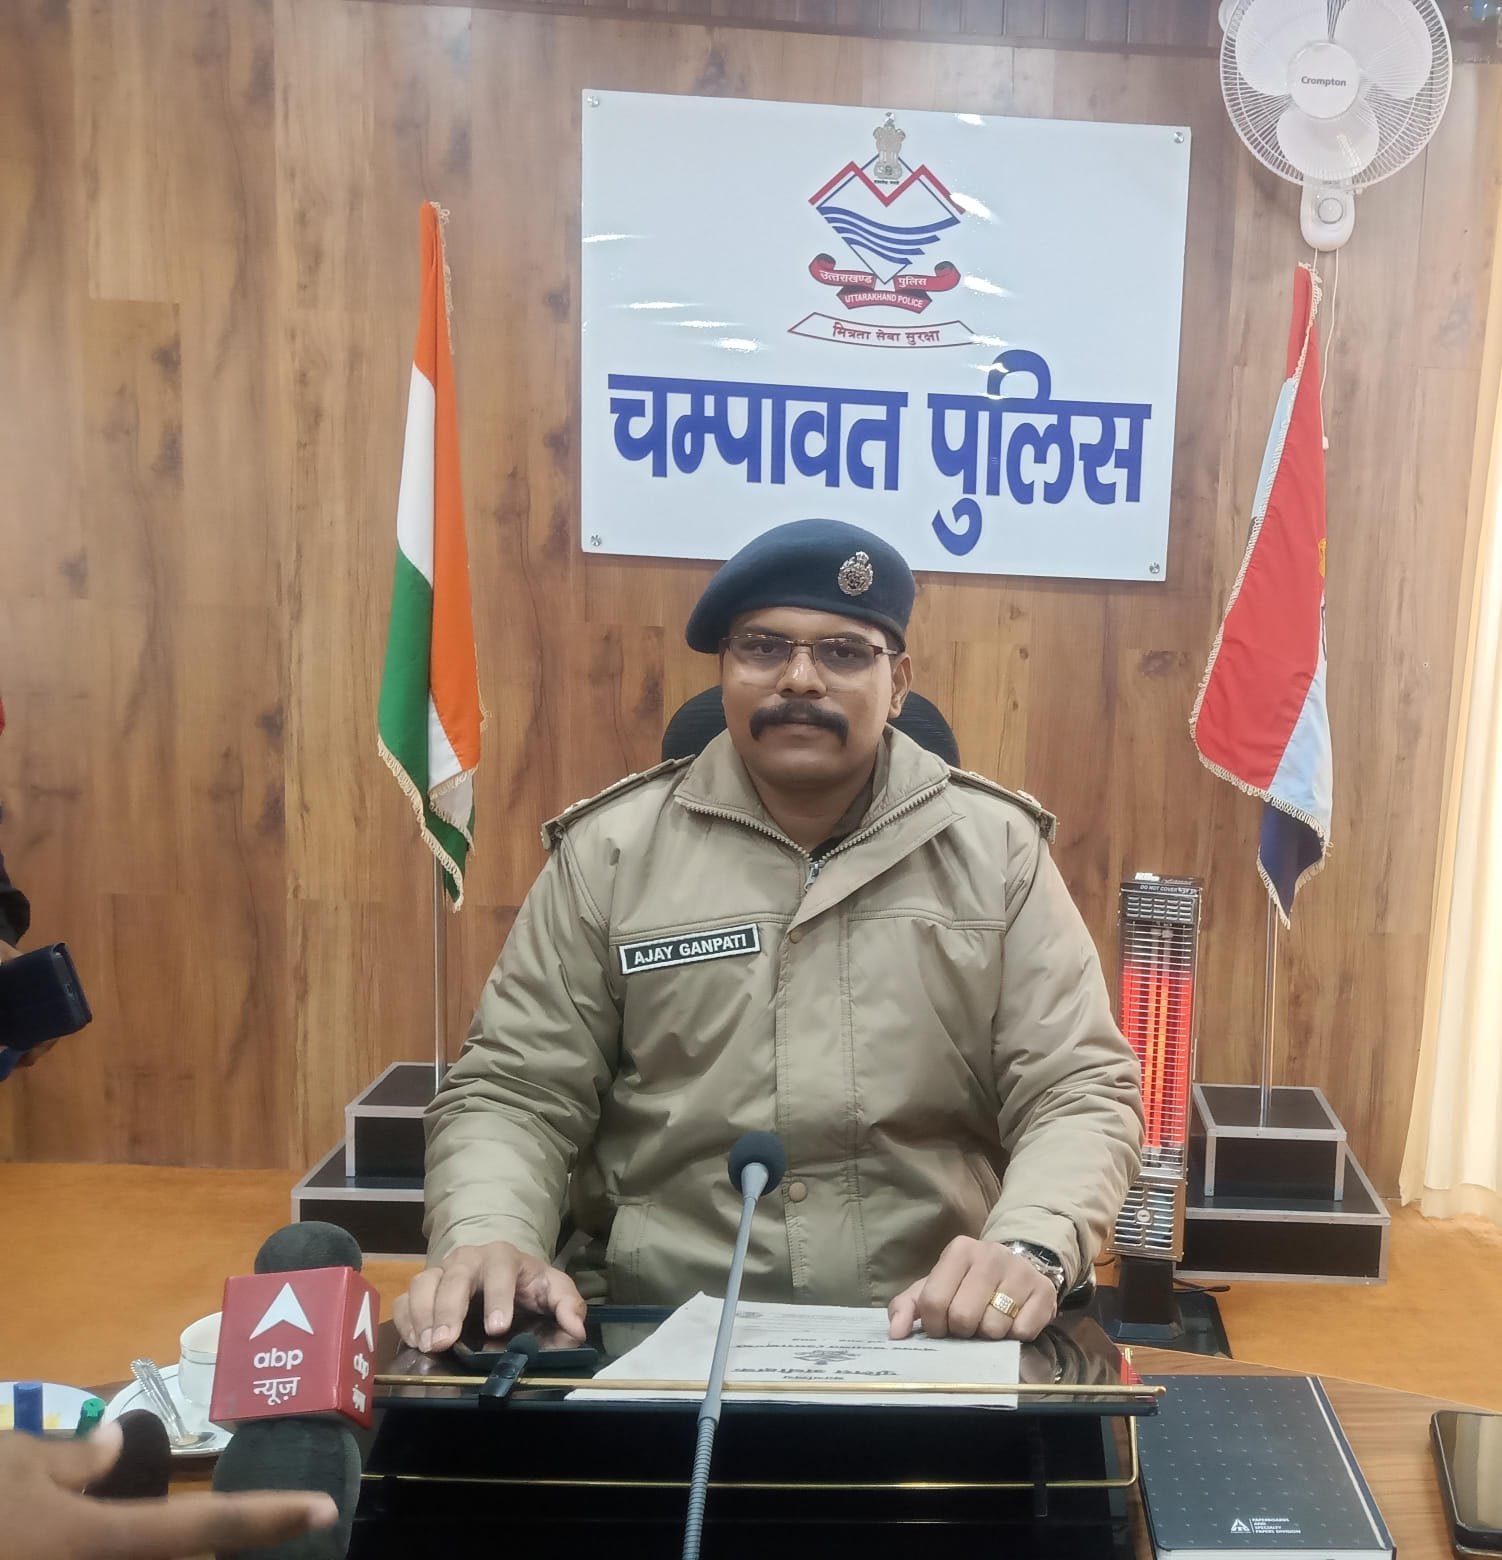 चंपावत:एसपी अजय गणपति कुंभार ने चम्पावत जिले में कार्यभार संभालने के बाद बनाई नई गश्त, 25 पुलिस अधिकारियों के कार्यक्षेत्र में किया बदलाव